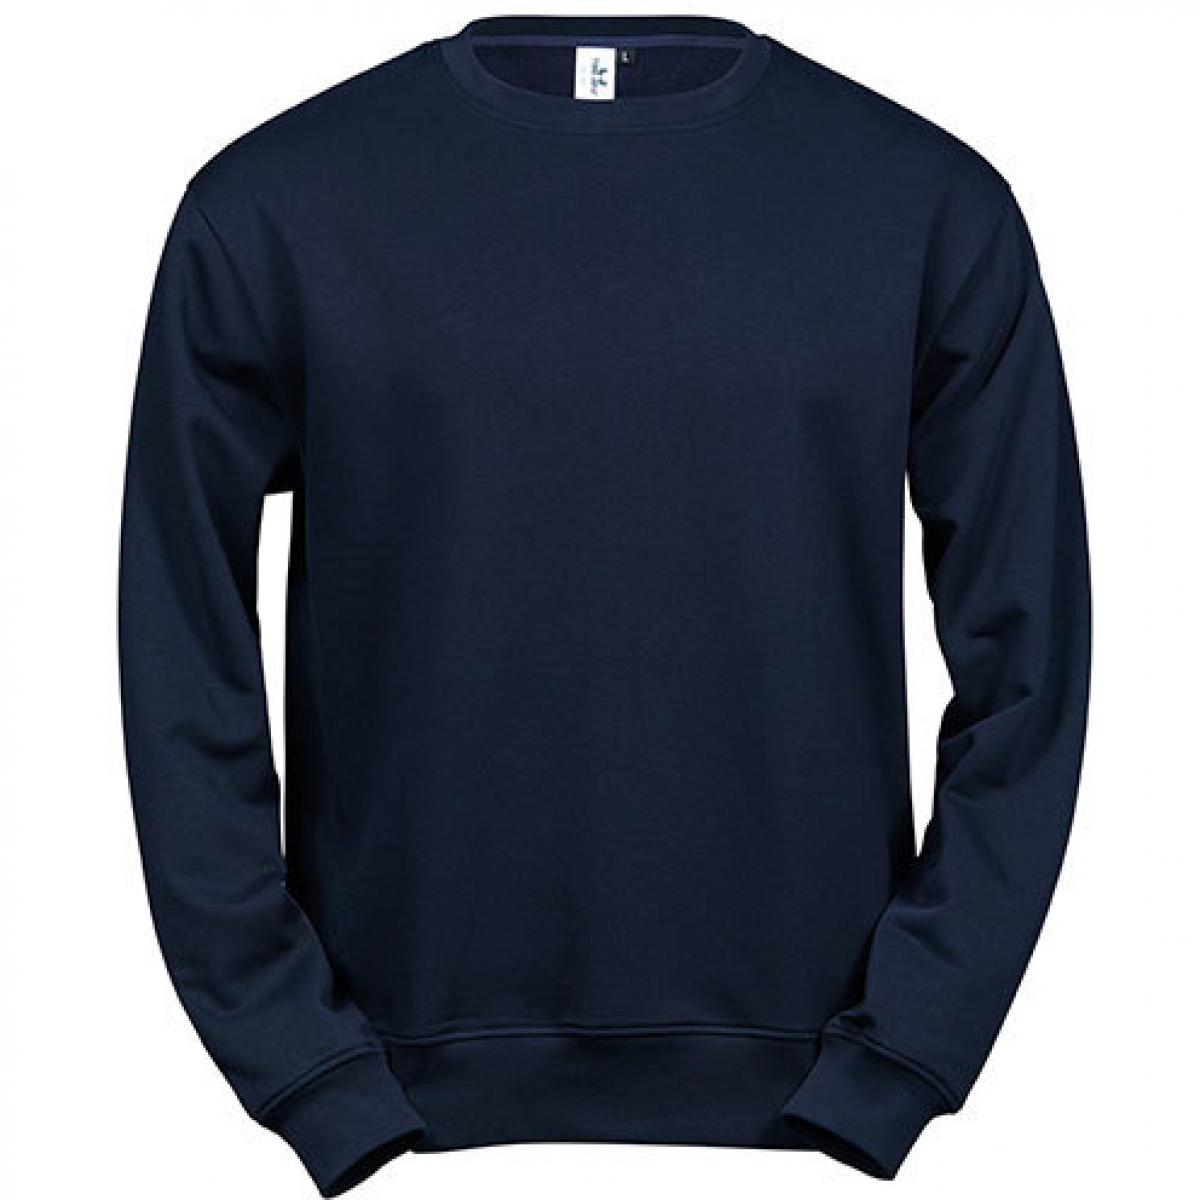 Hersteller: Tee Jays Herstellernummer: 5100 Artikelbezeichnung: Power Sweatshirt - Waschbar bis 60 °C Farbe: Navy